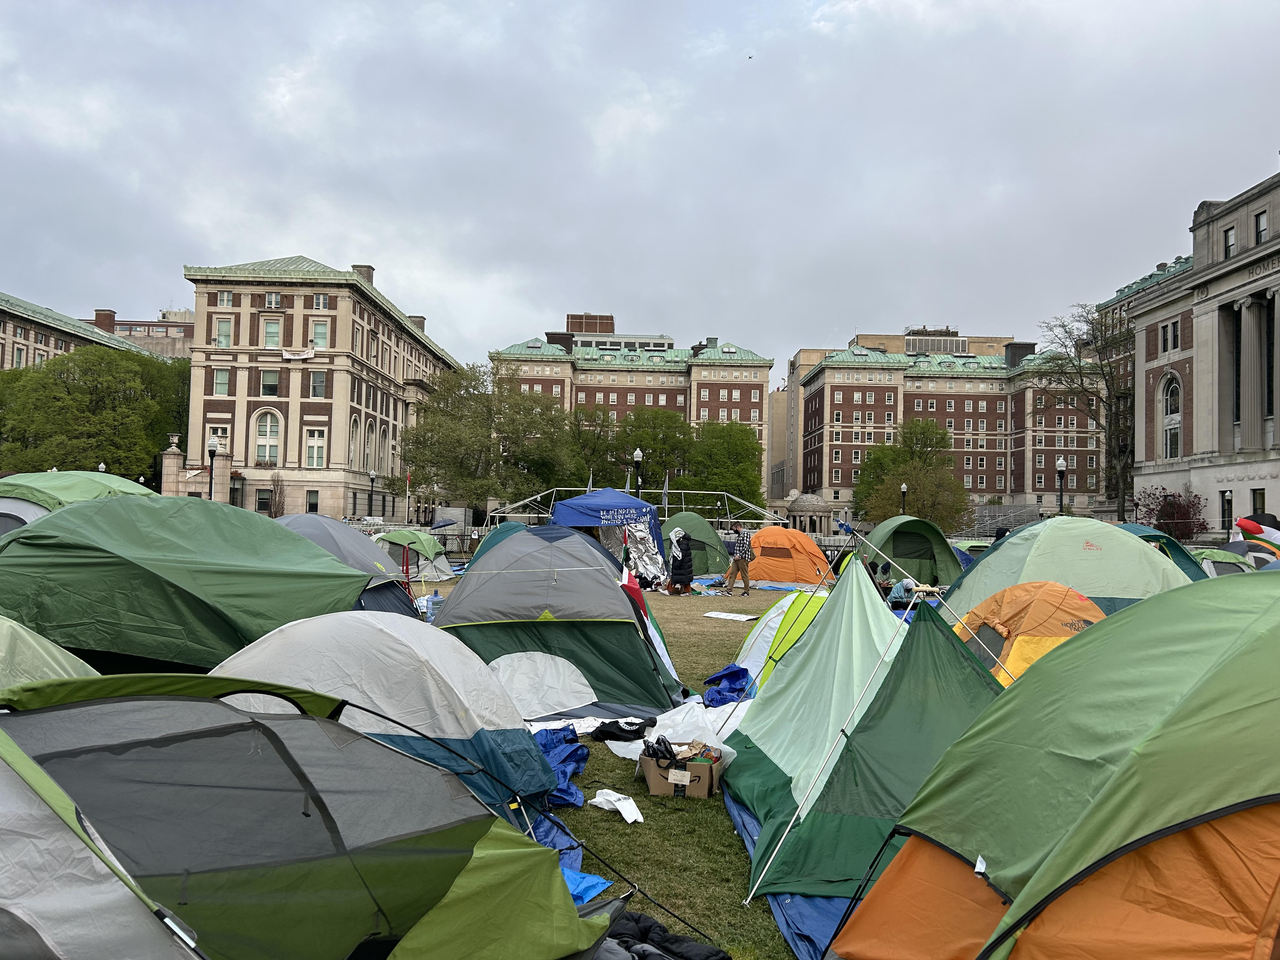 即使哥大校方已下达撤除命令，但直至4月30日，草坪区仍有数十顶帐篷，示威学生坚拒不退。（特约记者曹馨元／摄影）